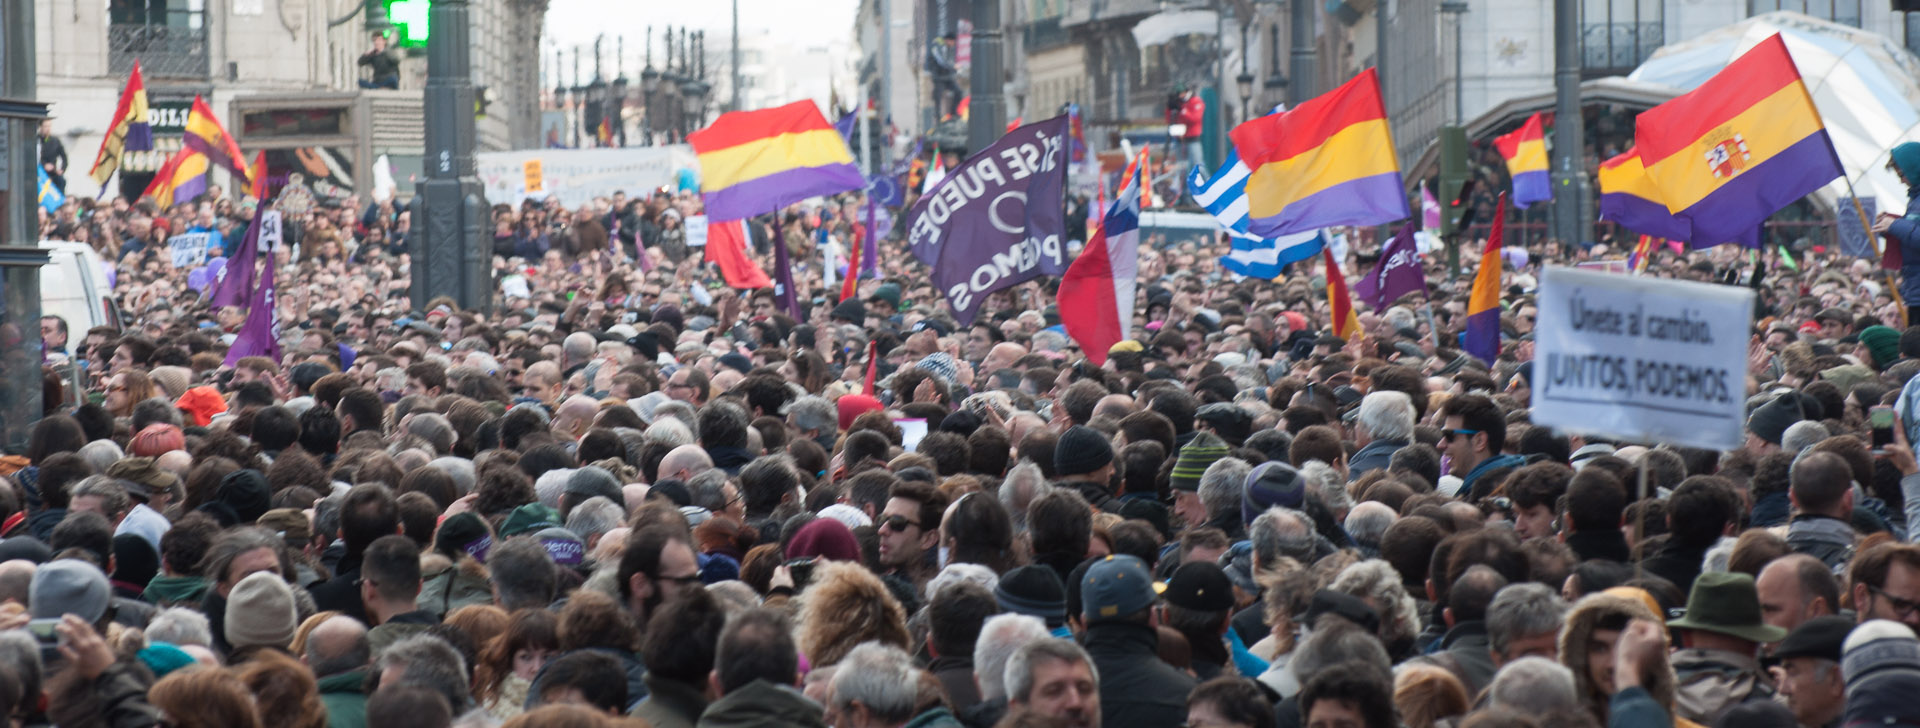 La Transversalidad De Podemos Naufraga En Un Mar De Banderas Republicanas Libertad Digital 0118